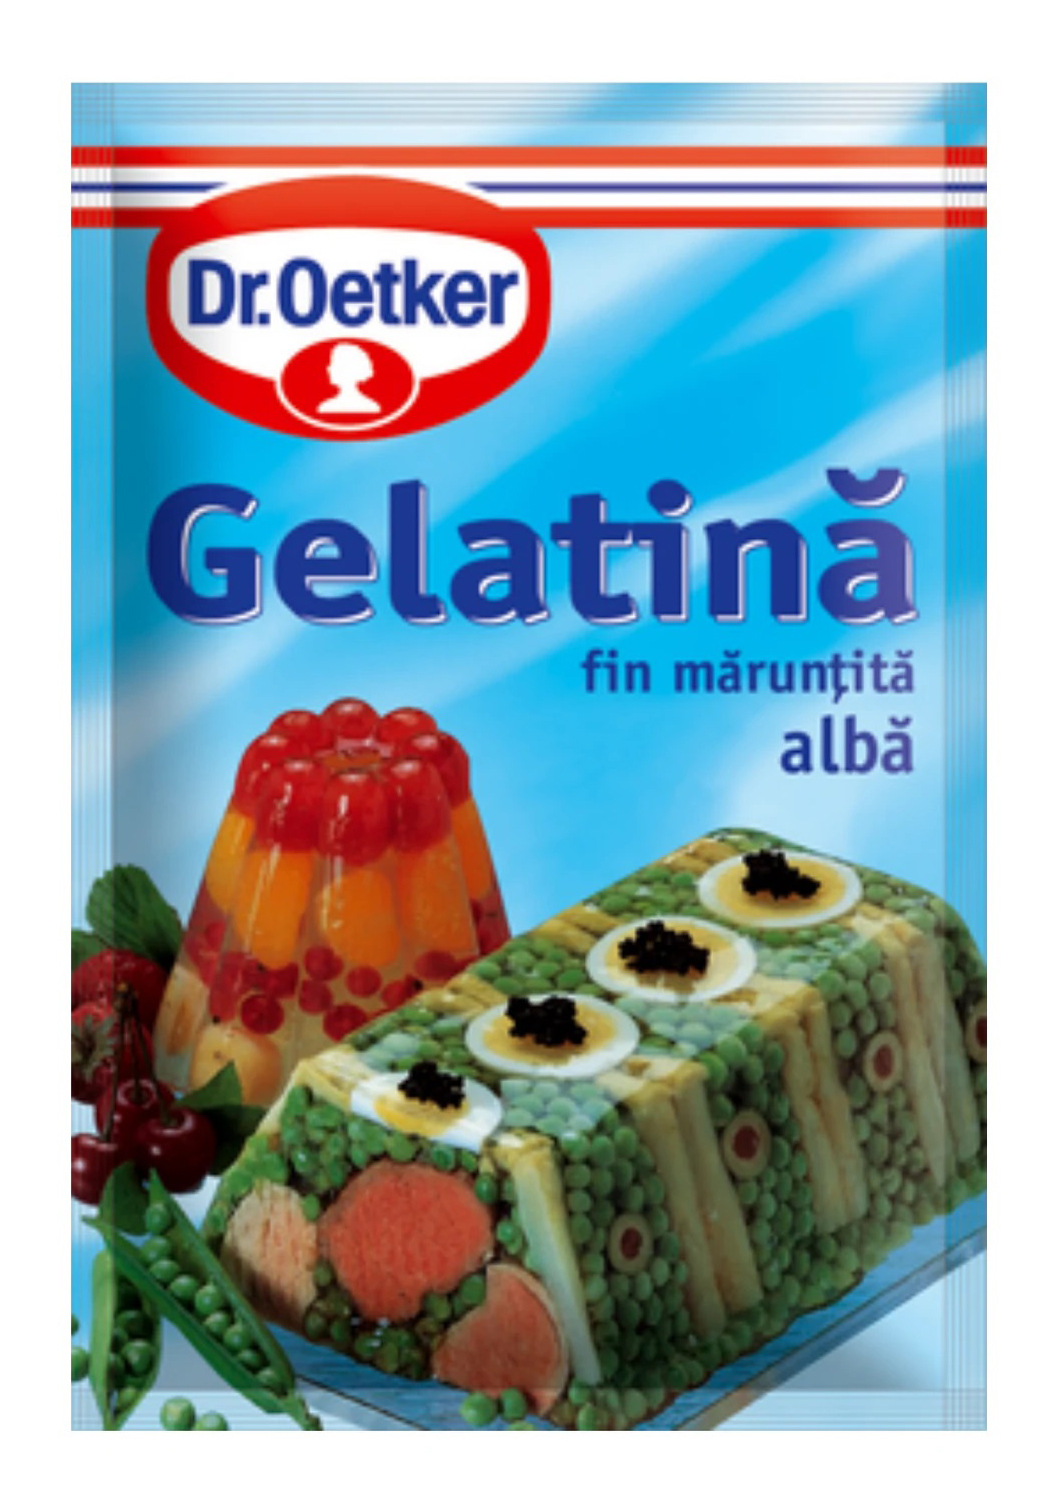 Gelatina